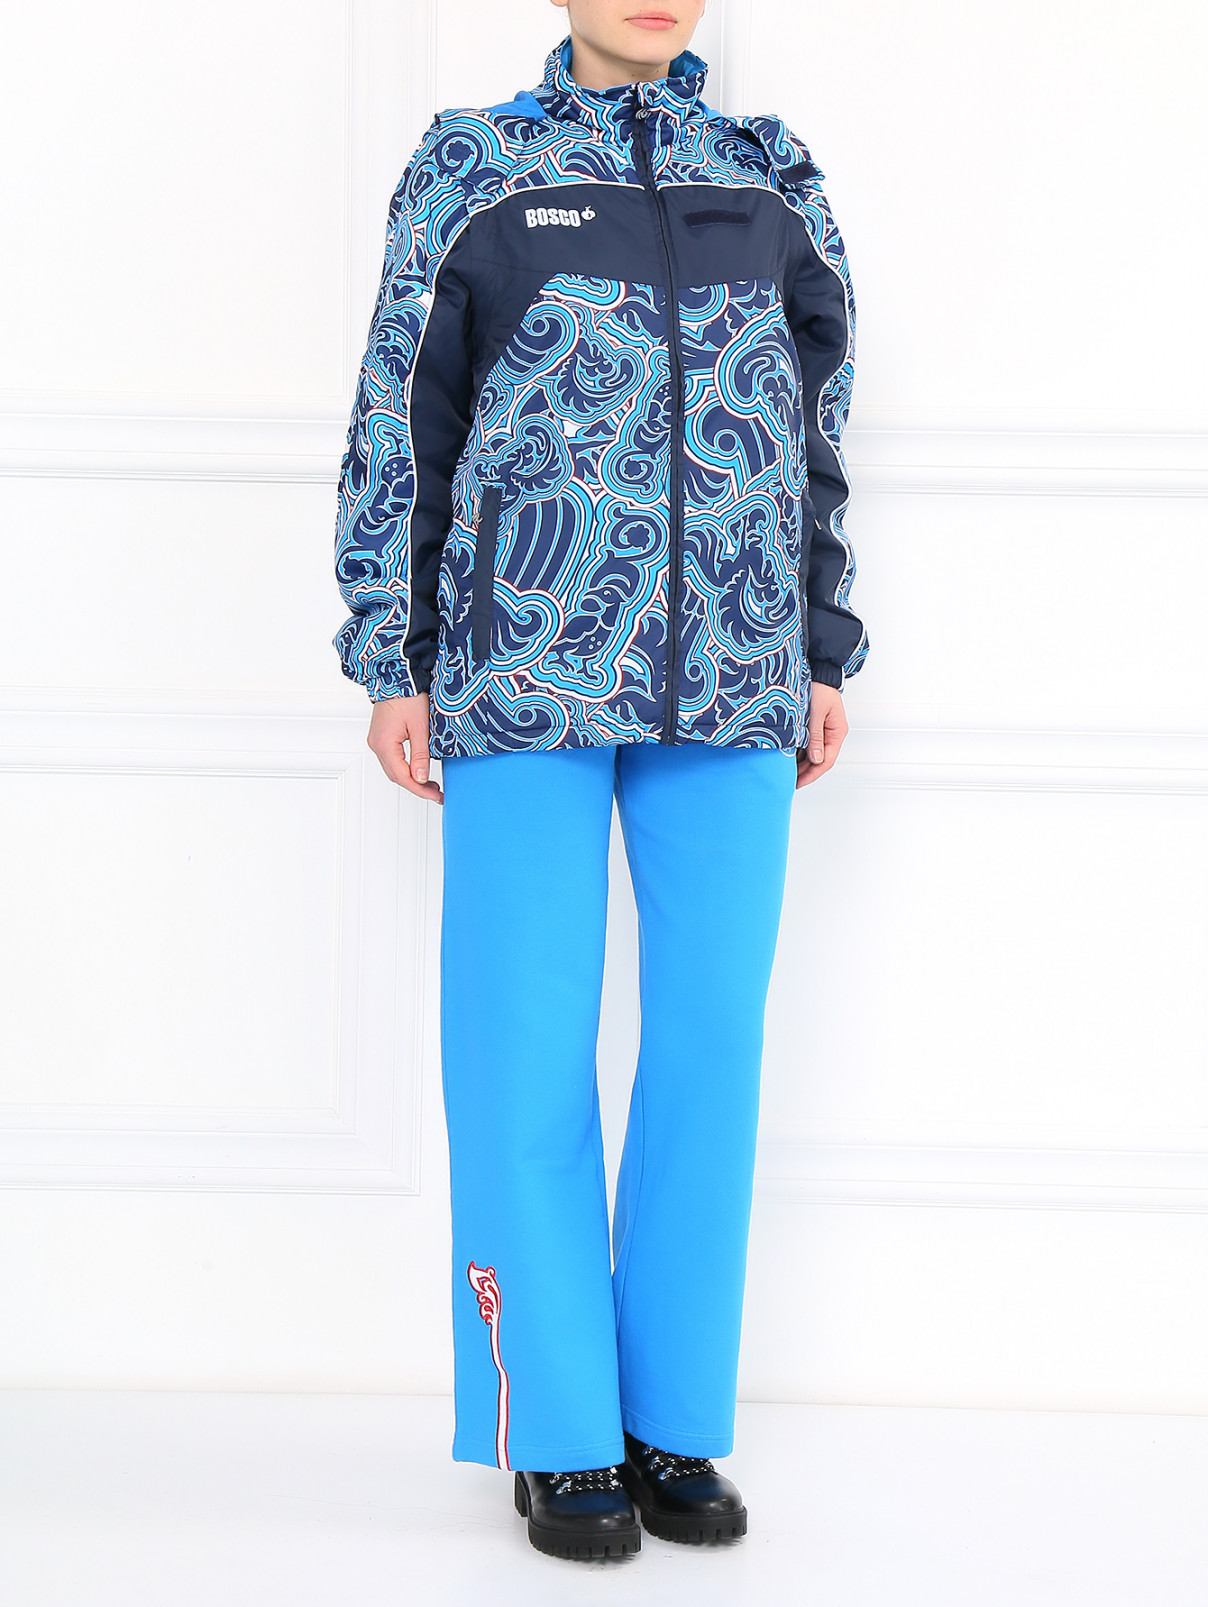 Куртка на молнии с капюшоном Sochi 2014  –  Модель Общий вид  – Цвет:  Синий